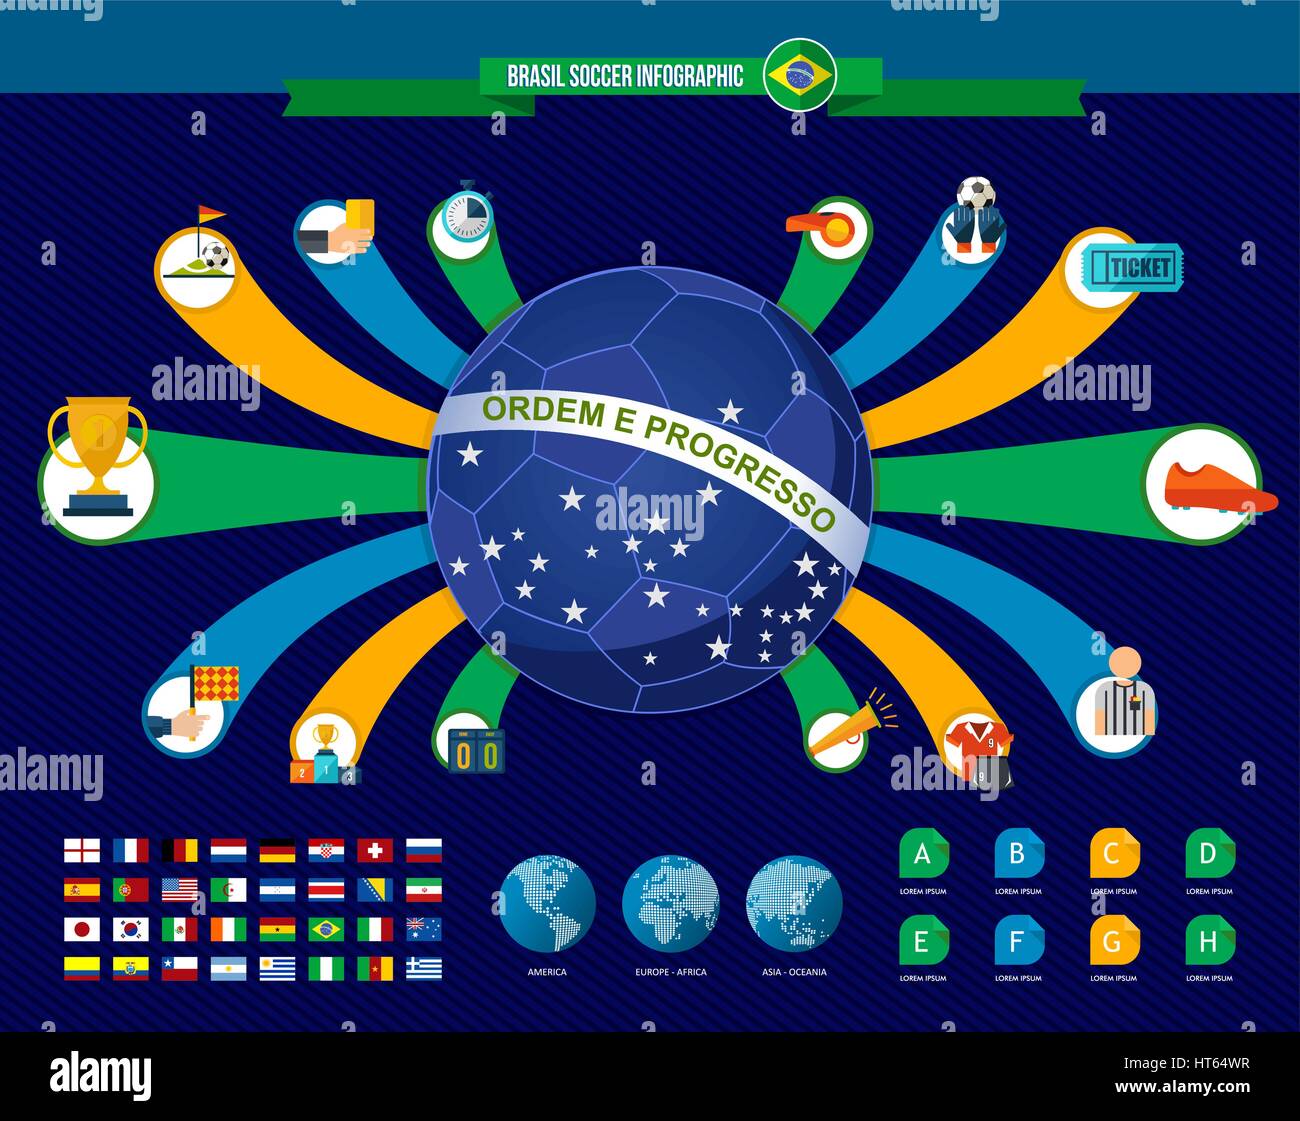 Brasilien Fußball-Infografik-Vorlage für Fußball-game-Turnier. Enthält organisierte Länderliste, Symbole und Teams. EPS10 Vektor. Stock Vektor